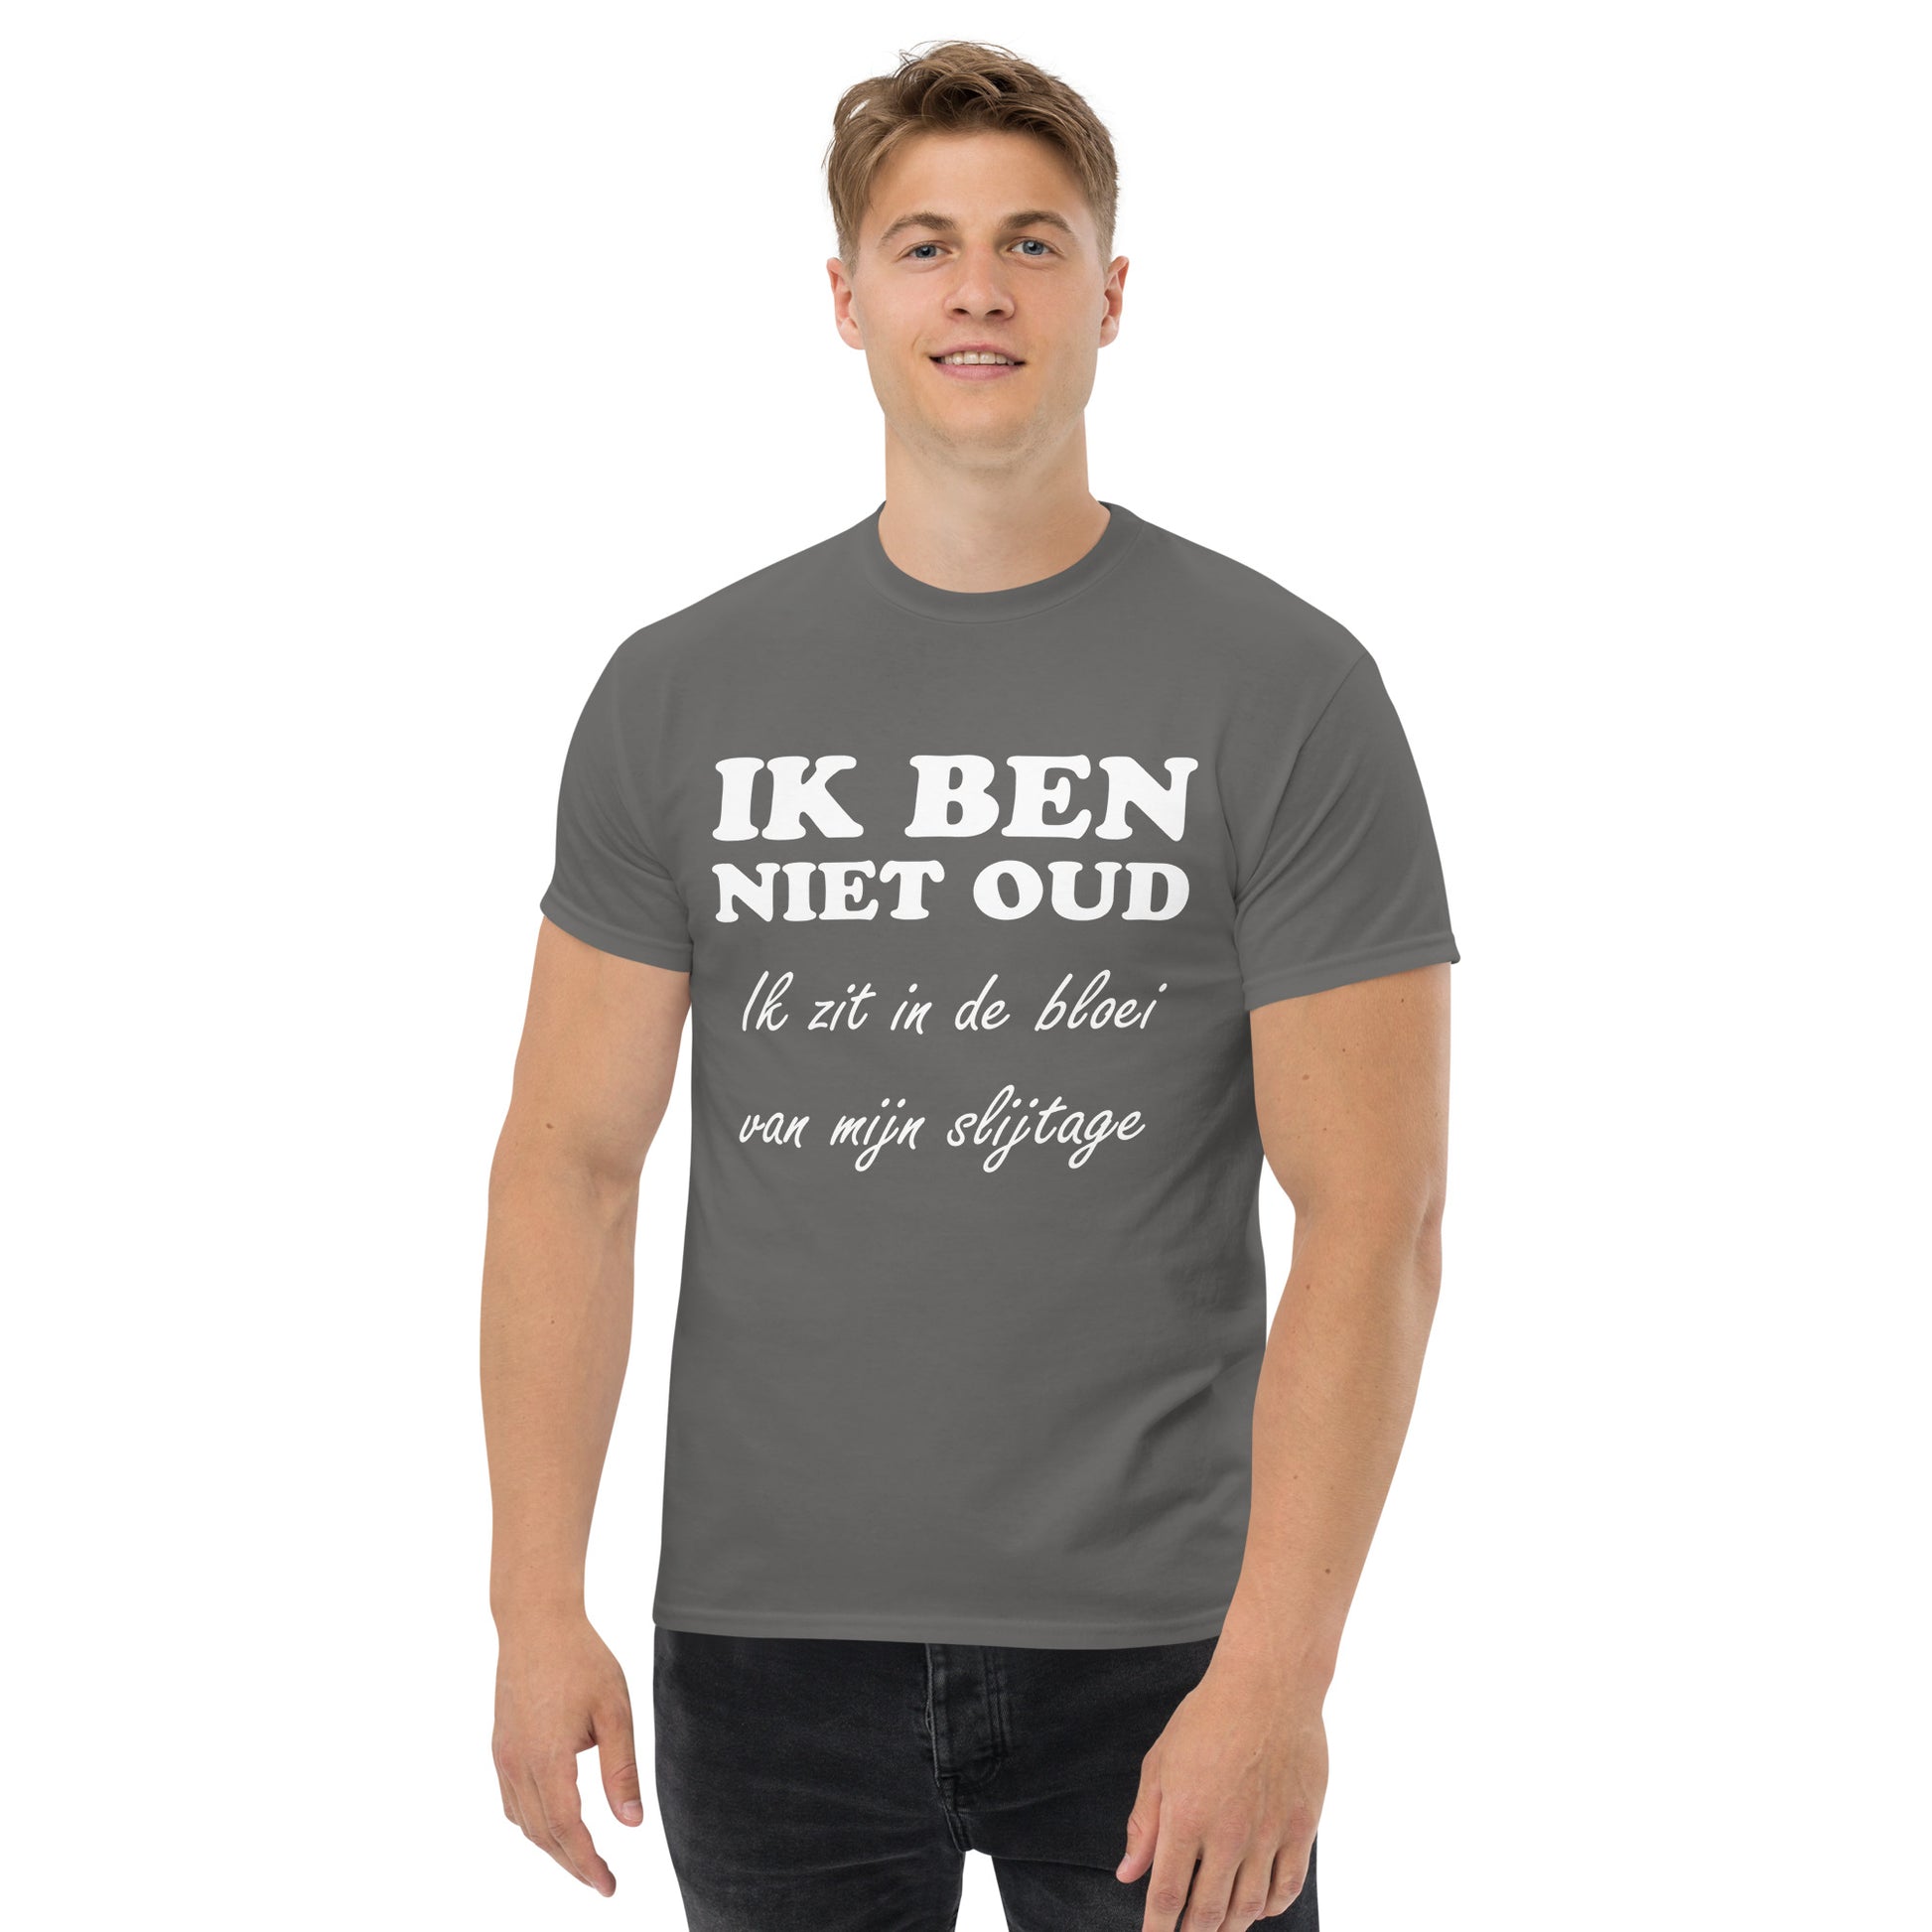 Men with Charcoal T-shirt with the text in white "IK BEN NIET OUD ik zit in de bloei van mijn slijtage"